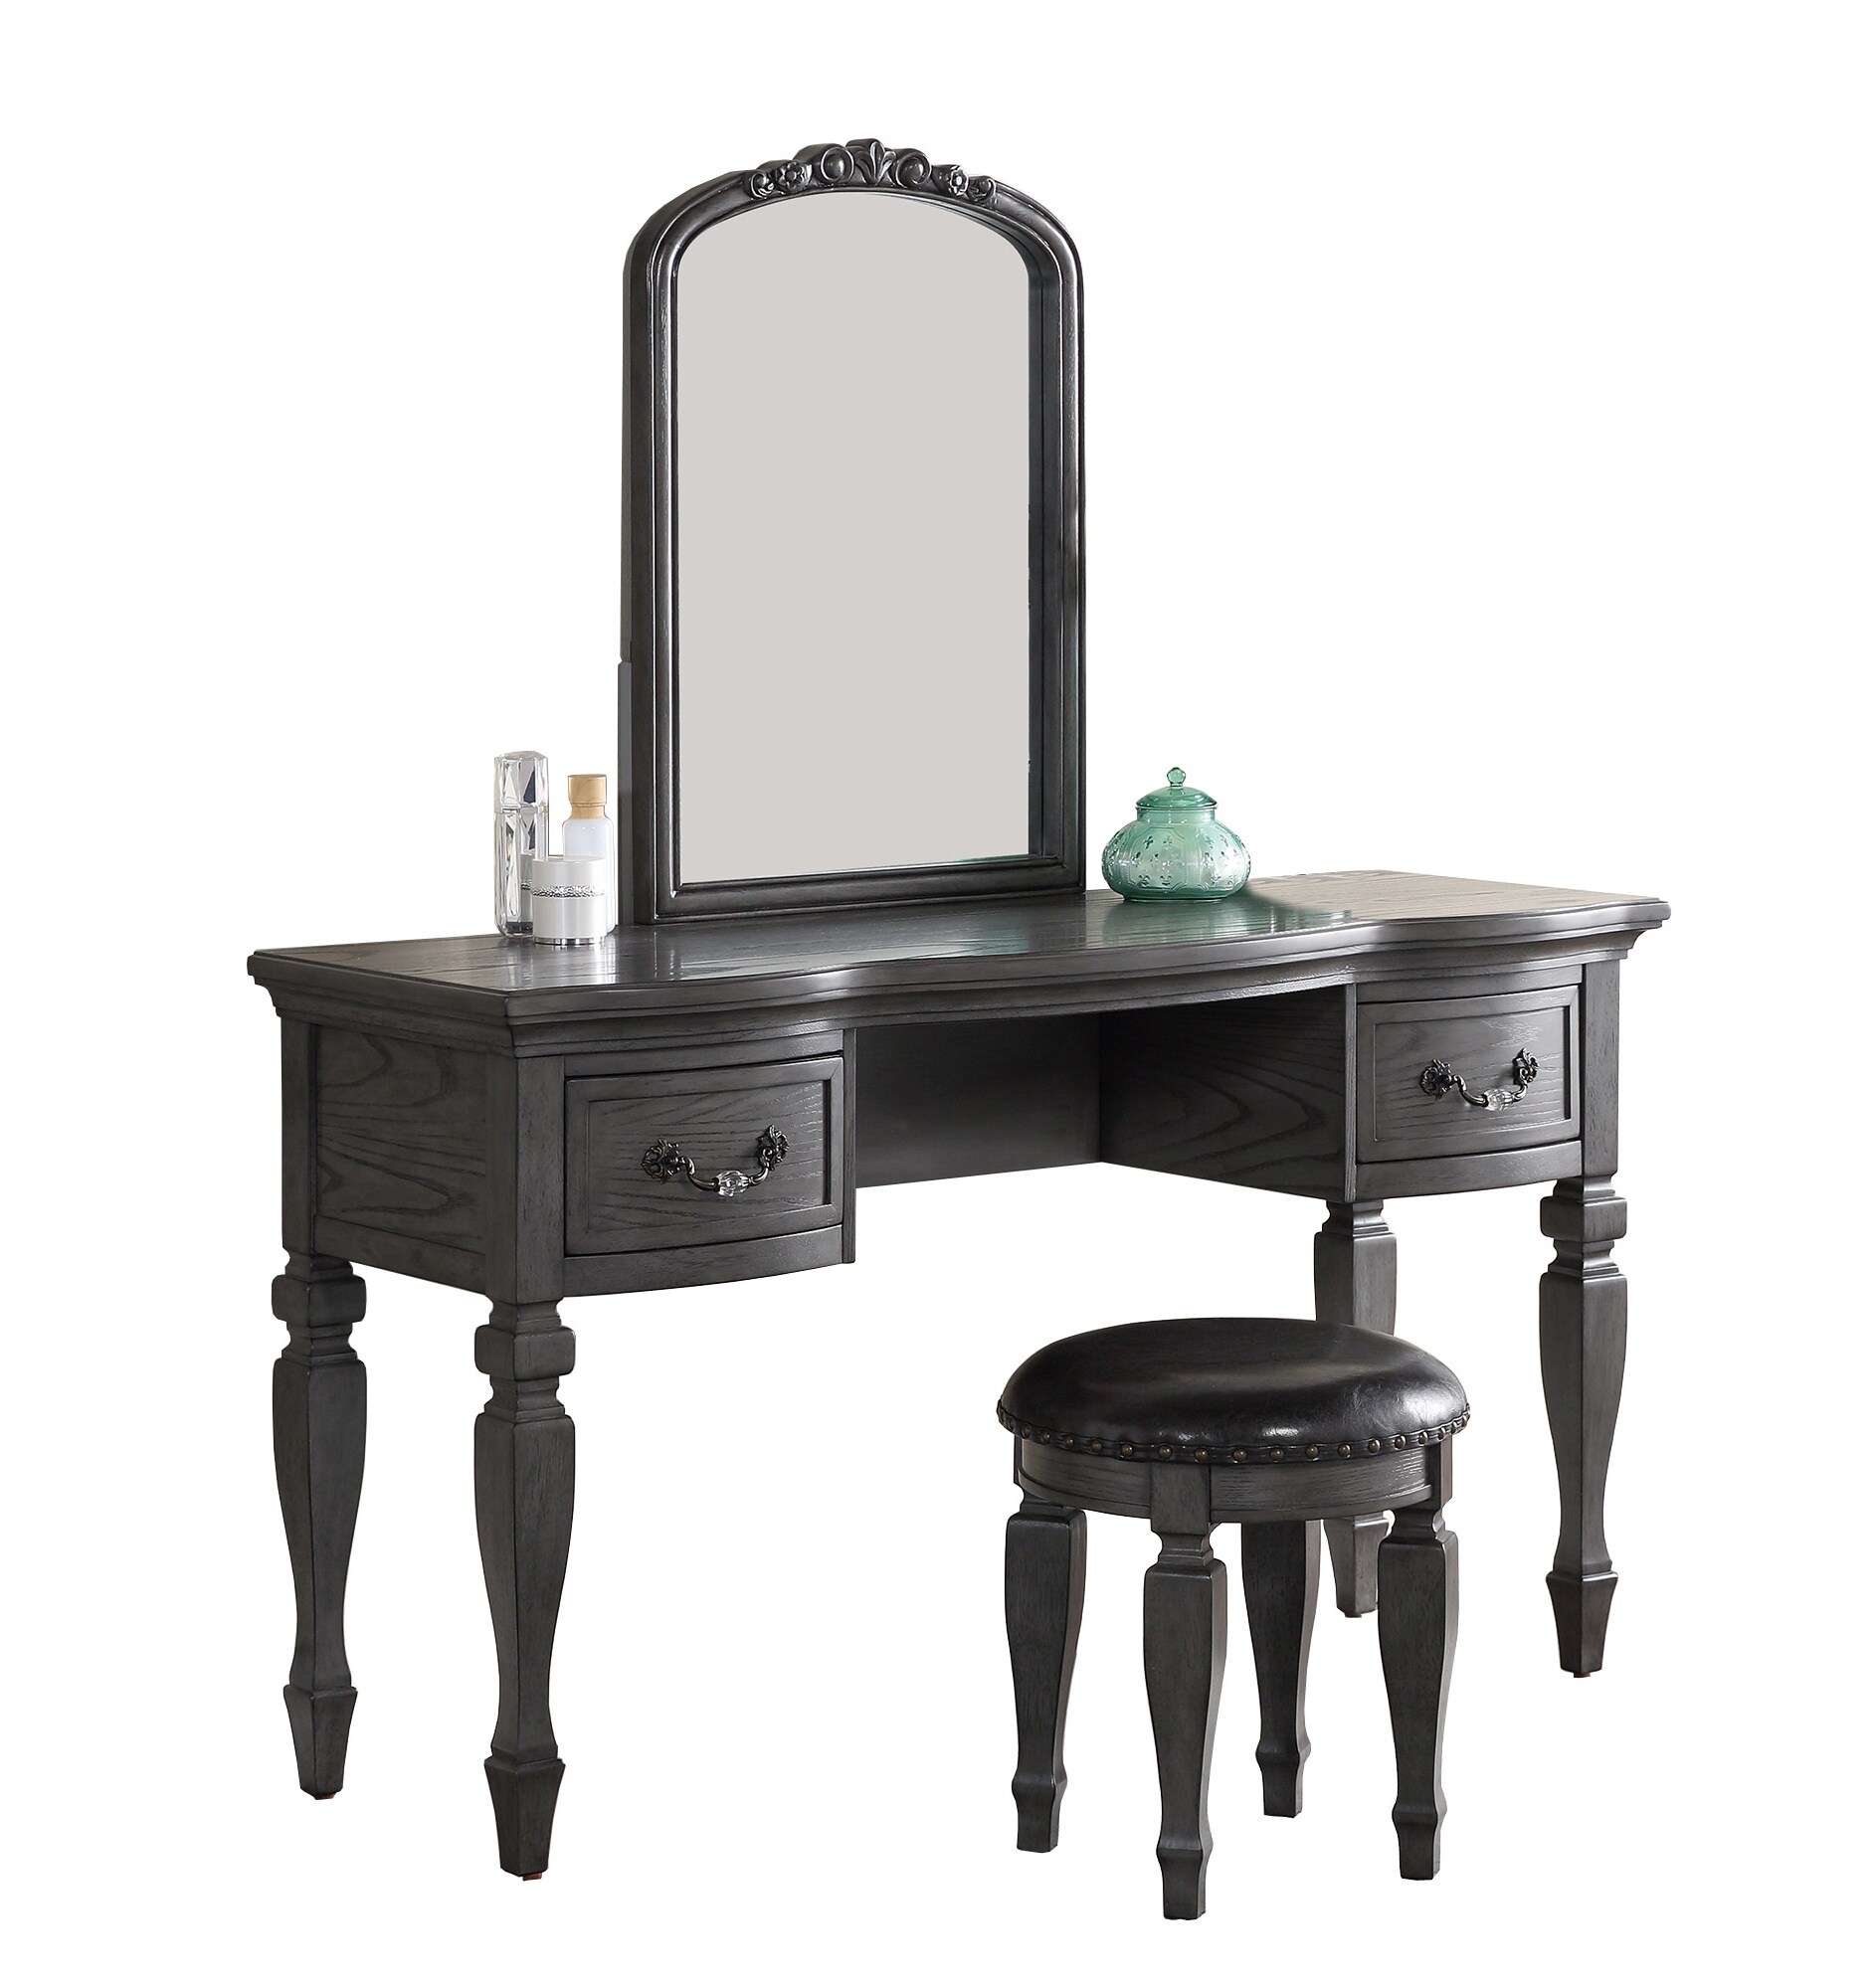 Vanity/ vintage sewing table vanity with storage / grey & blush